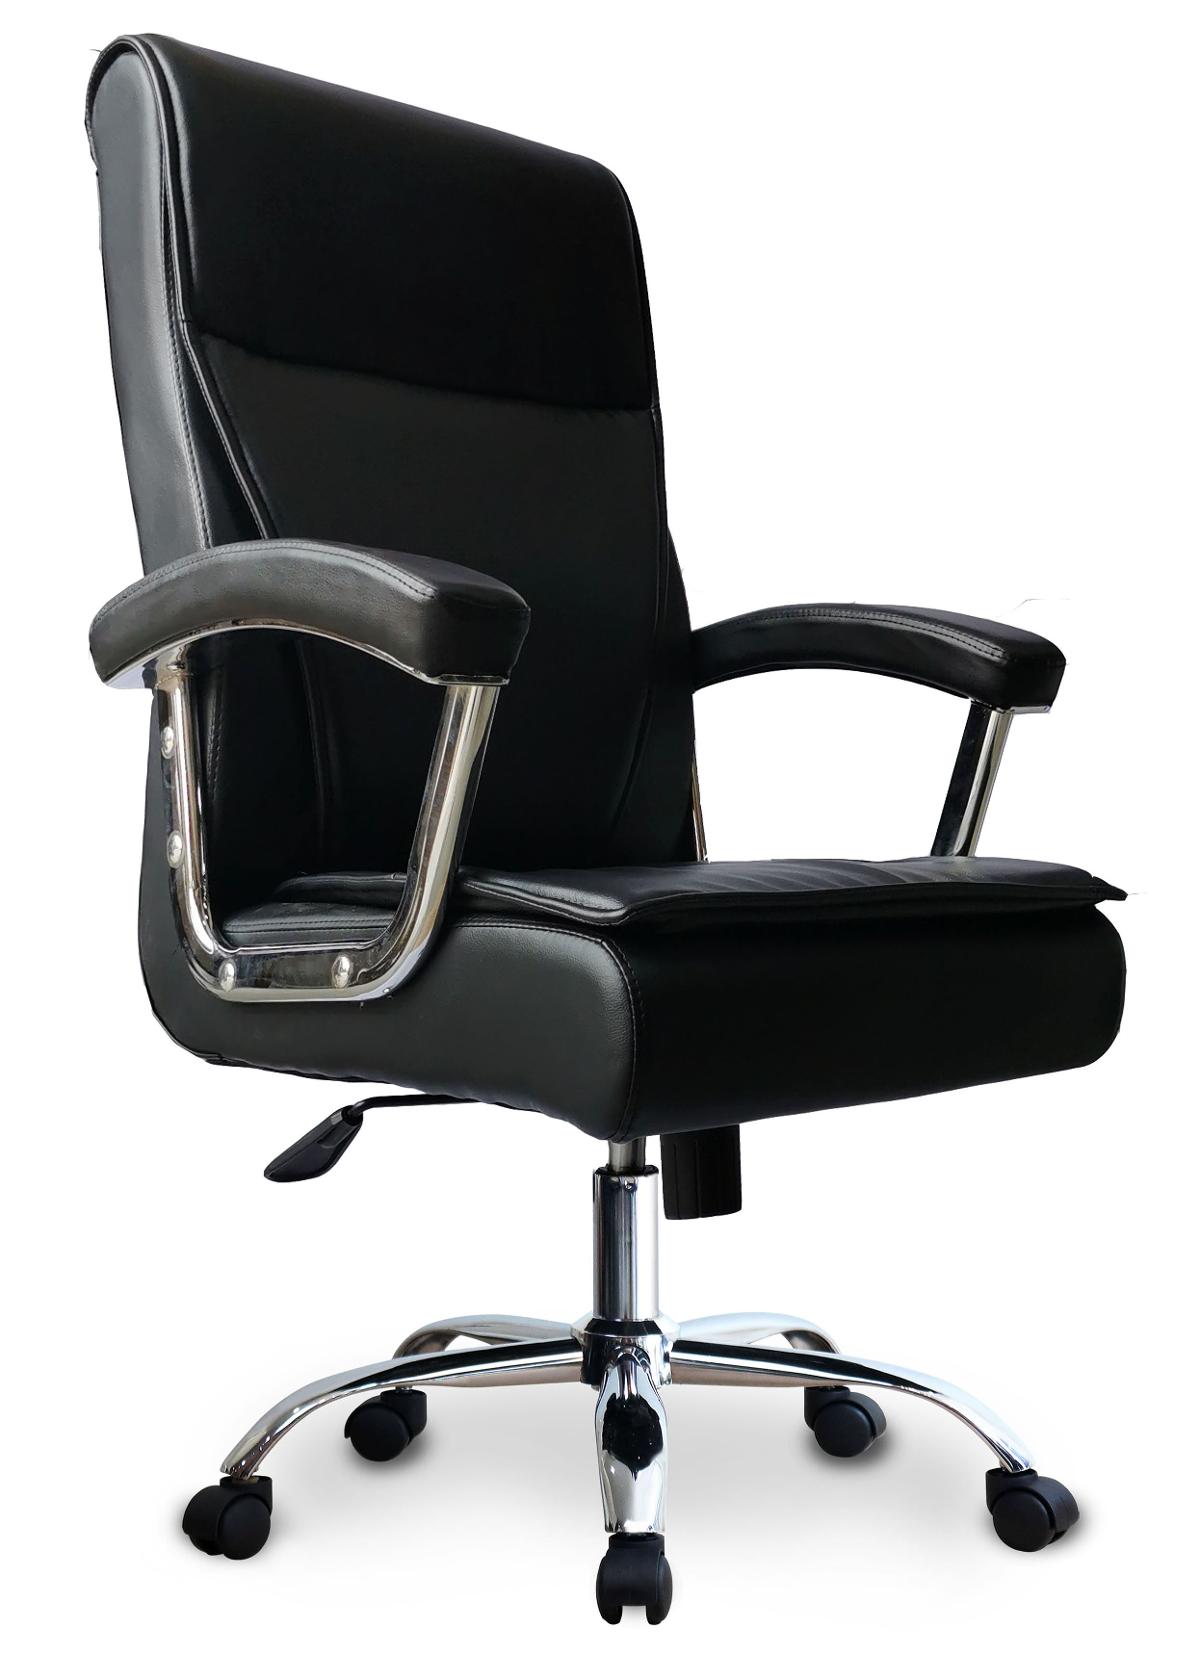 Super Chair เก้าอี้ผู้บริหาร รุ่น PK8007-MT